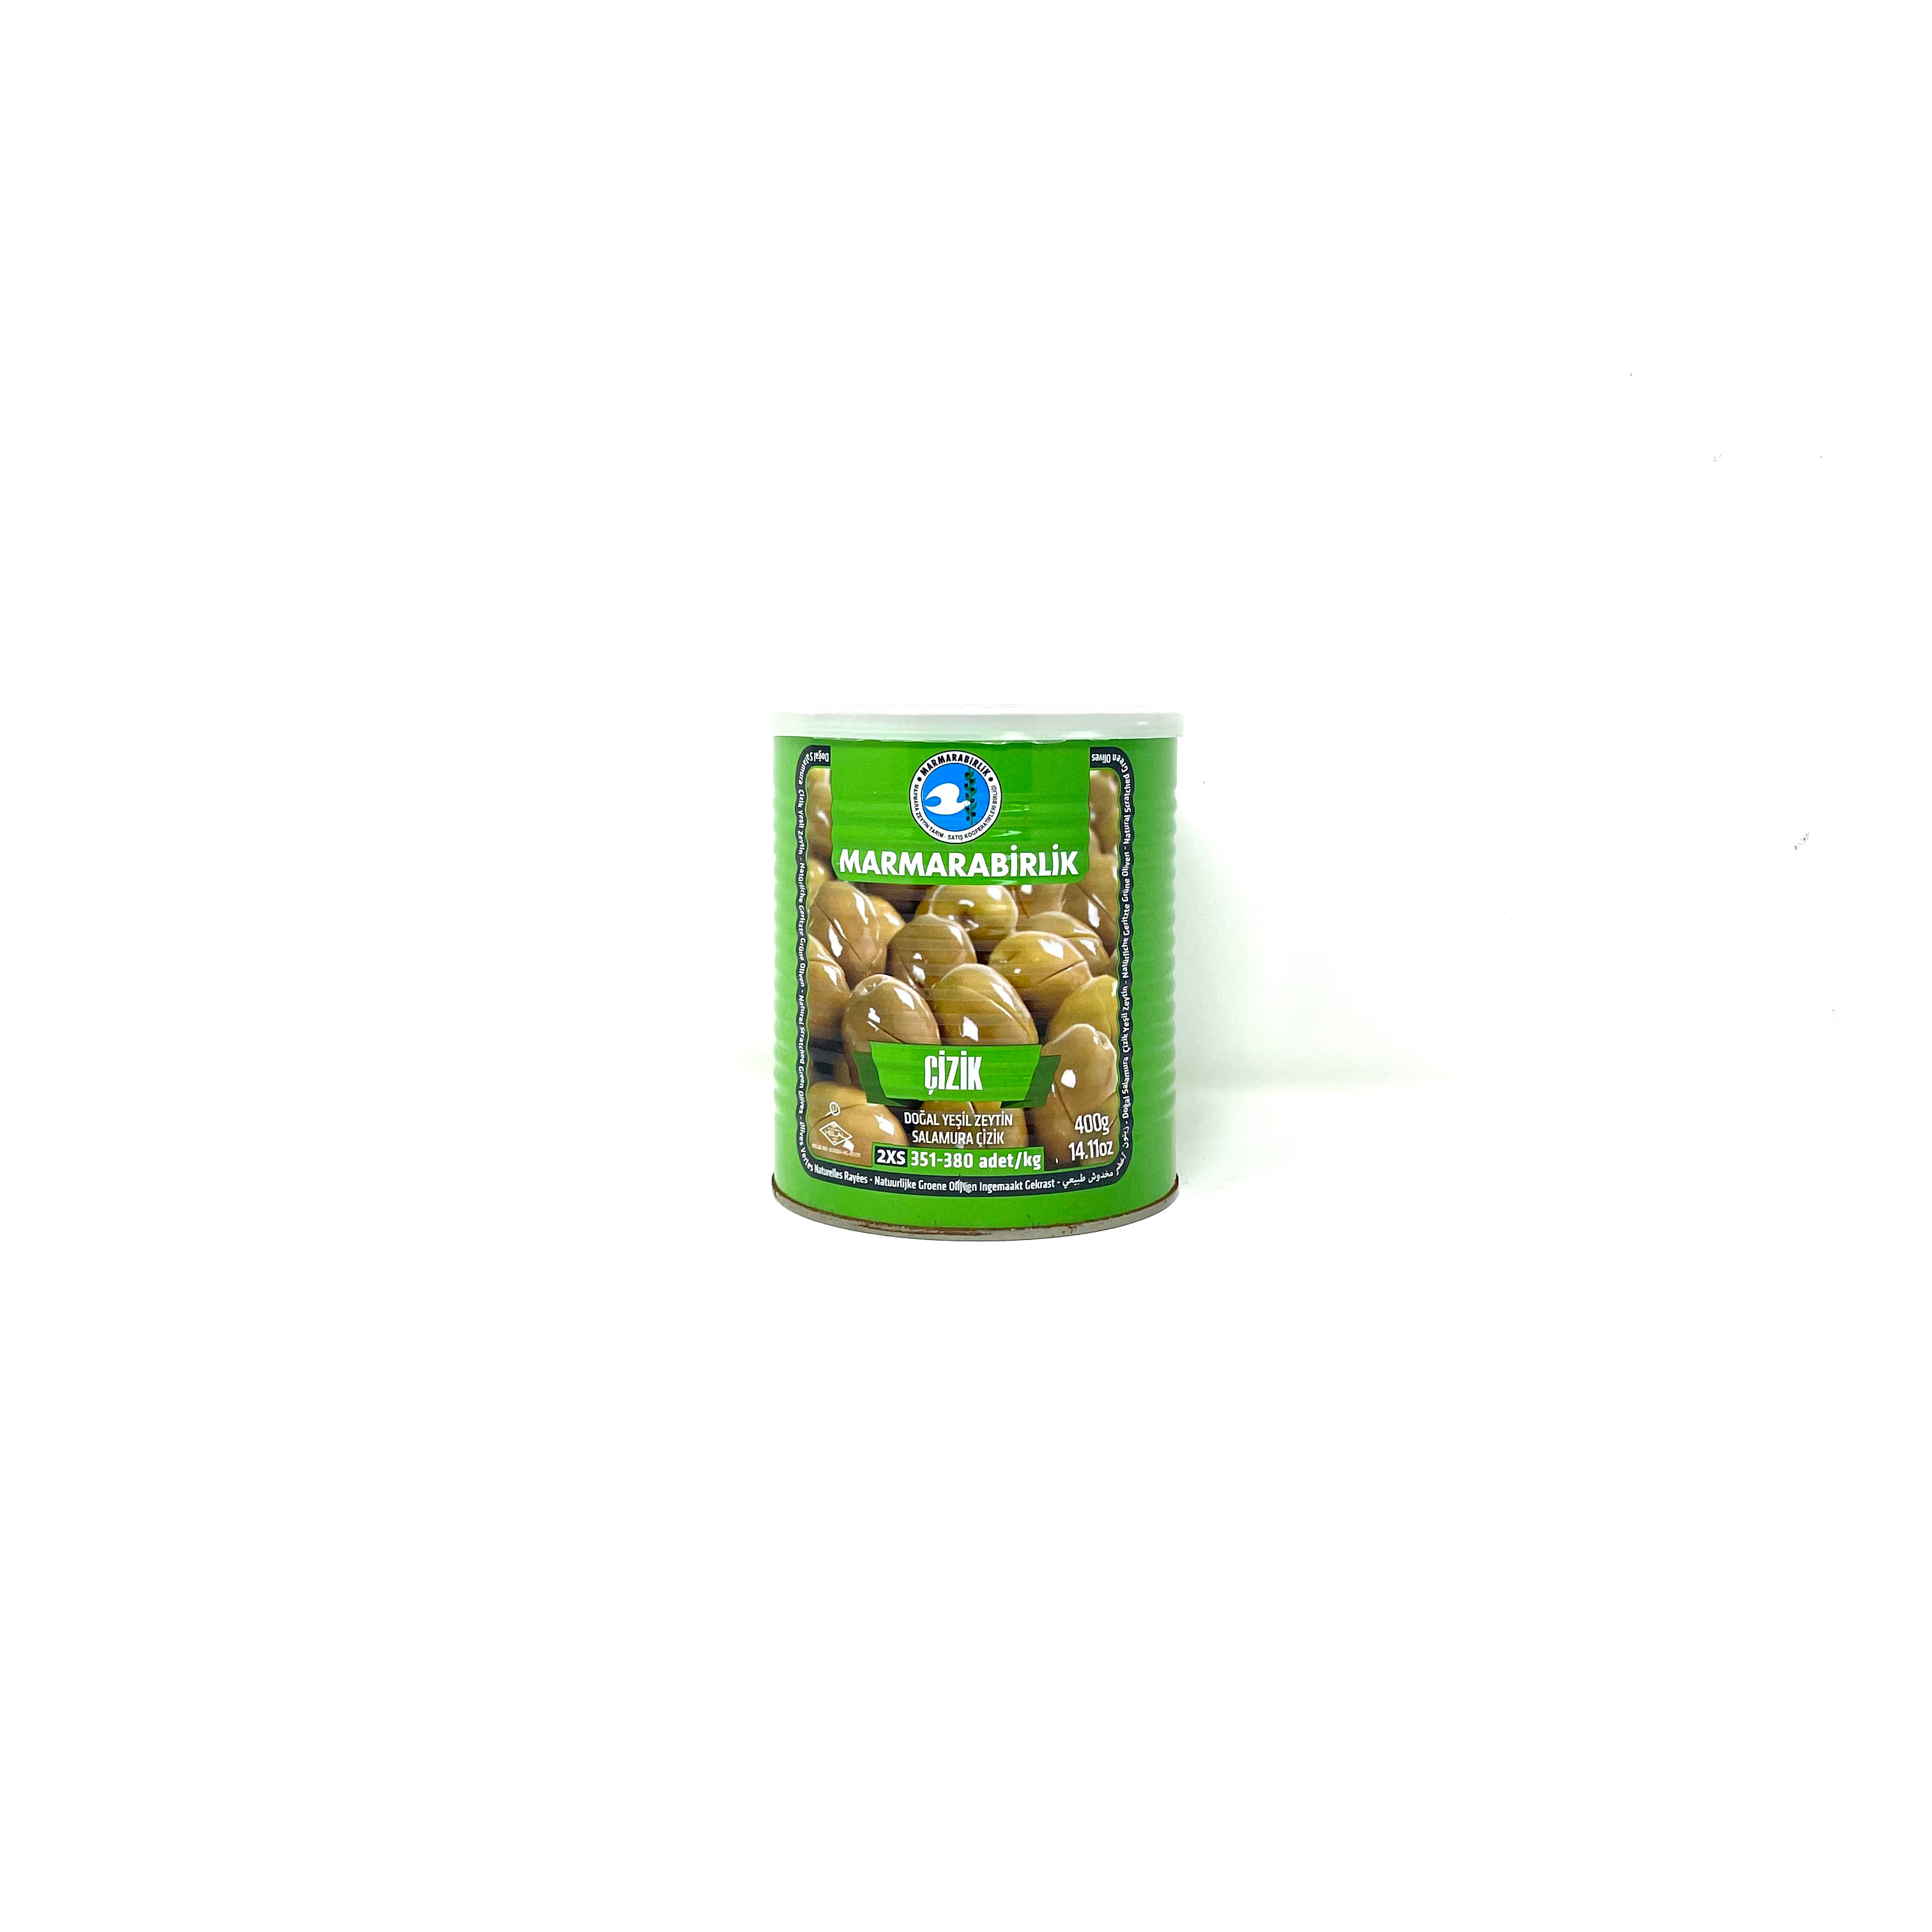 Marmarabirlik grüne Oliven, geschlitzt 400g